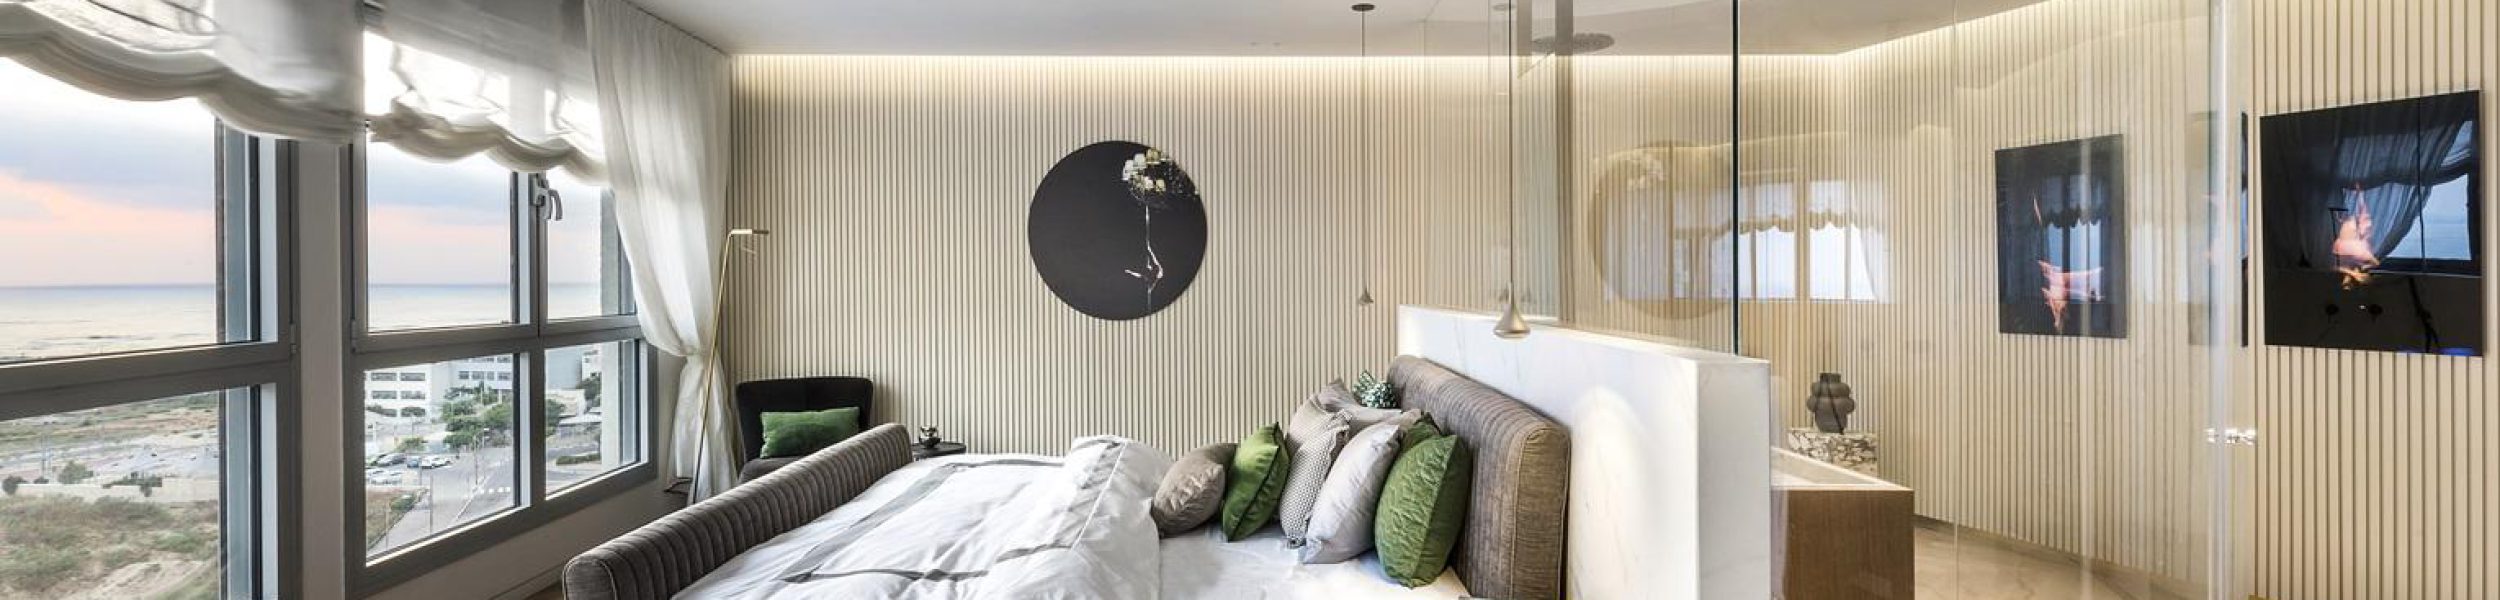 אמבטיה שקופה בקצה המיטה, בעיצובה של צביה קזיוף (צלם: עמית גושר)